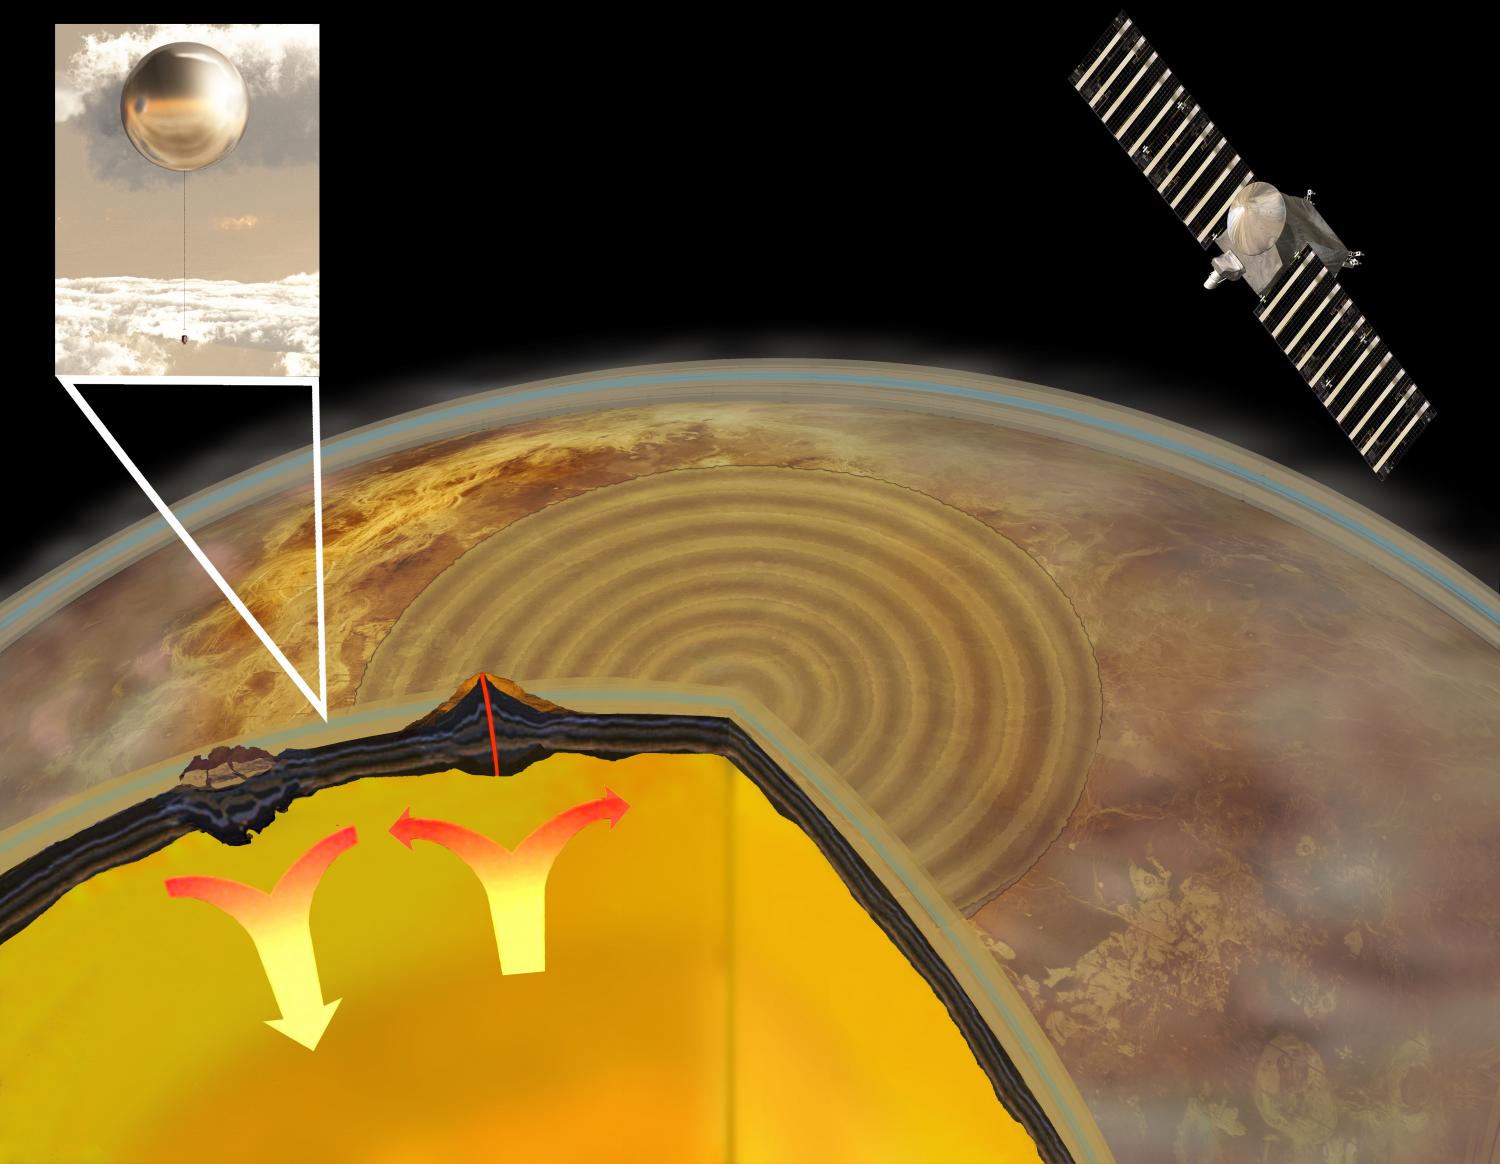 Sur Vénus, des séismes et des éruptions volcaniques, éventuellement causés par des mouvement convectifs dans le manteau de la planètes, généreraient des ondes sismiques qui se convertiraient en infrasons dans son atmosphère dense. Des ballons pourraient surveiller en permanence l'occurrence de ces émissions d'infrasons, ouvrant une fenêtre sur l'intérieur de Vénus. © Keck Institute for Space Studies (KISS)